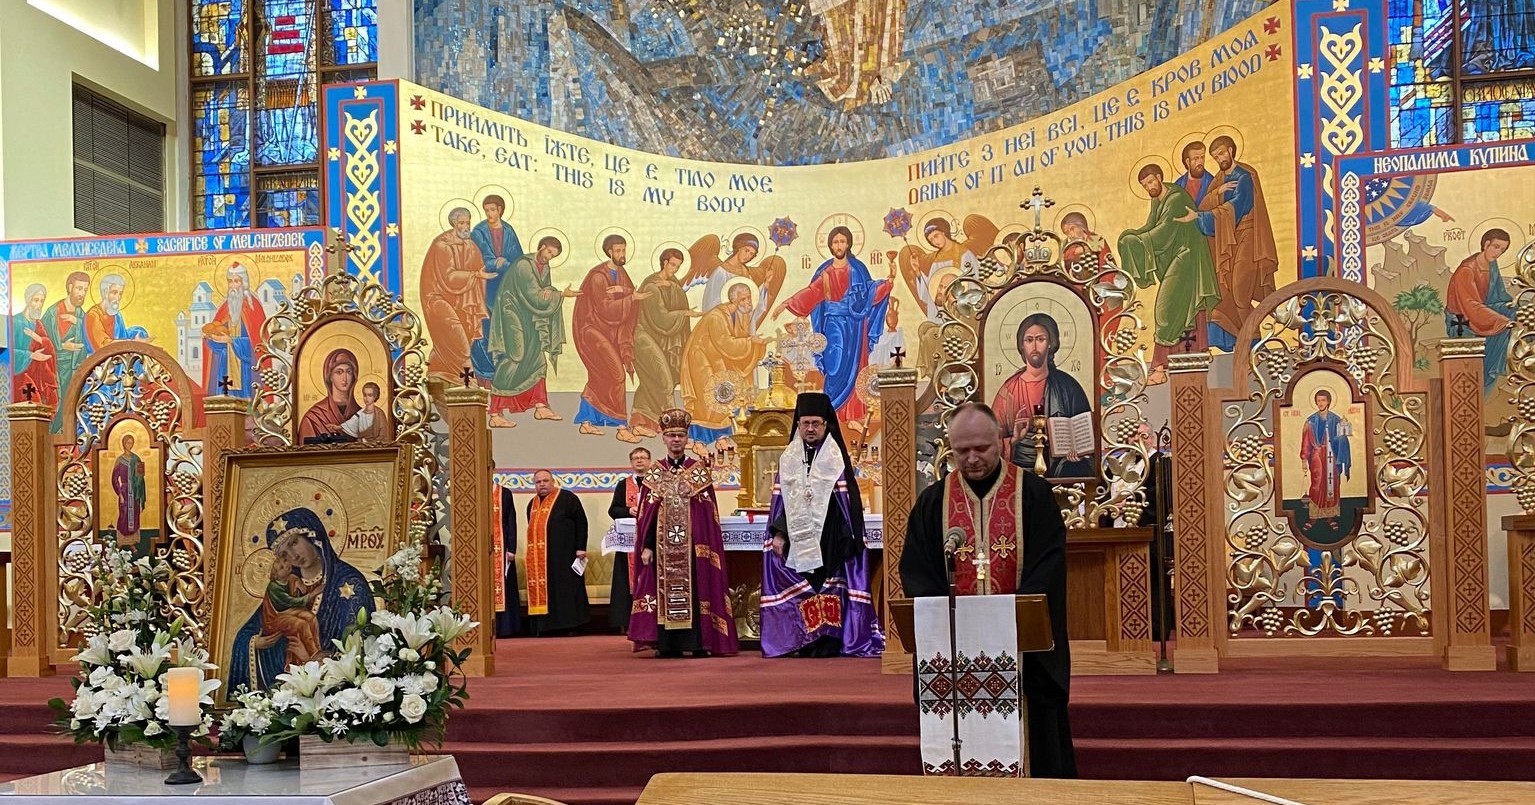 St. Basil Ukrainian Catholic Parish